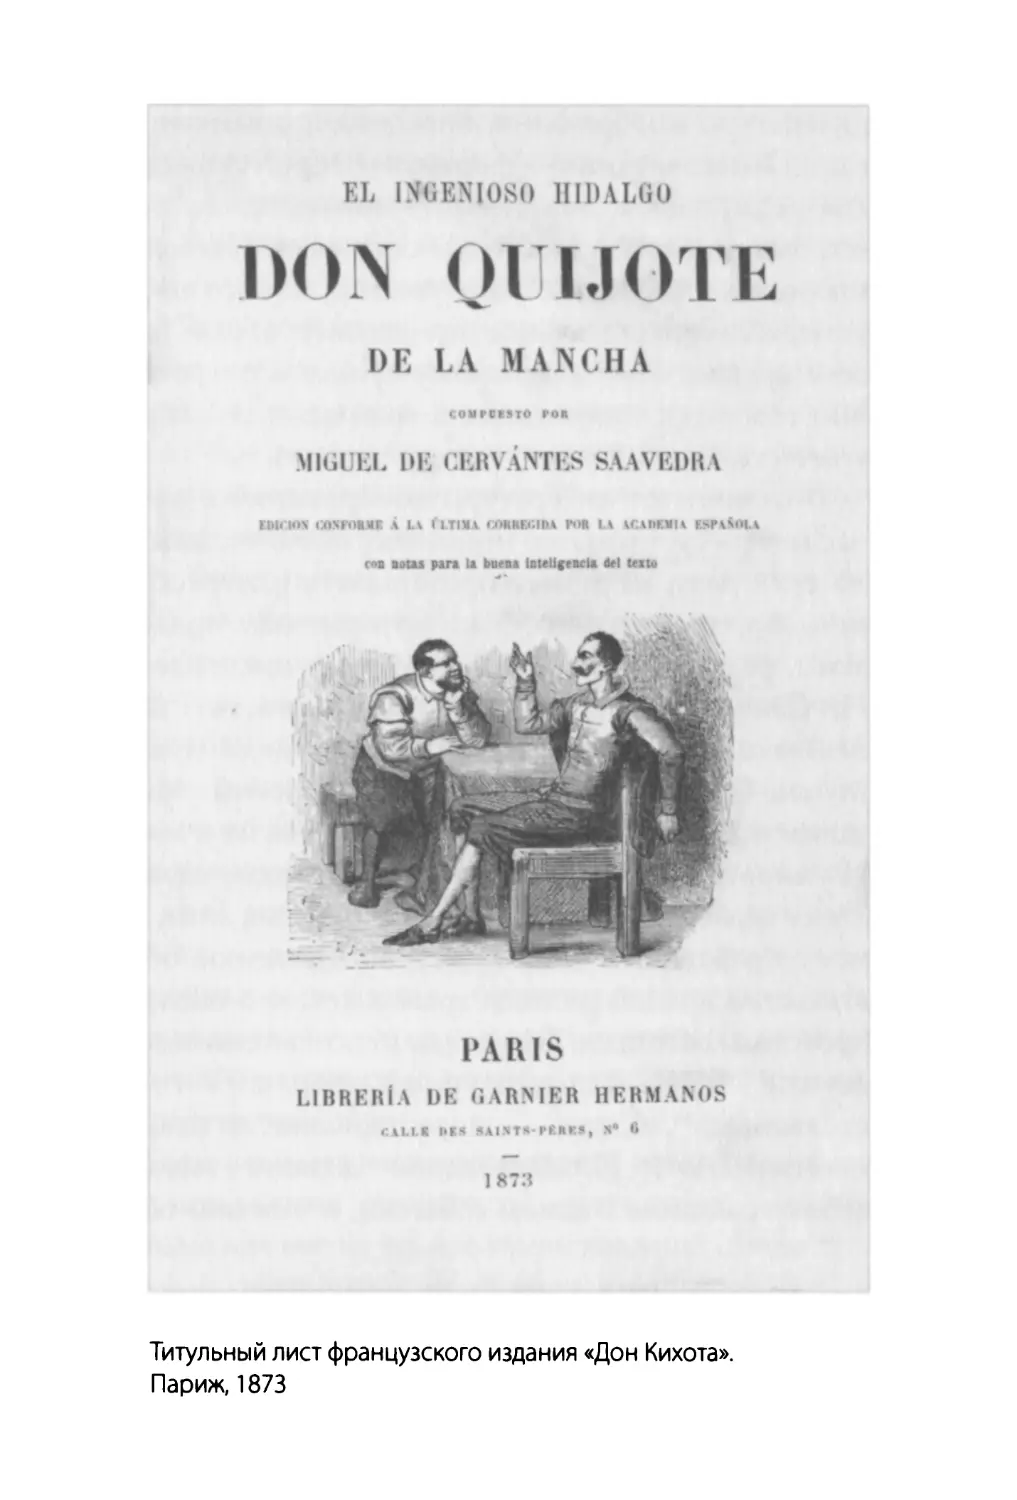 Титульный лист французского издания «Дон Кихота». Париж, 1873.